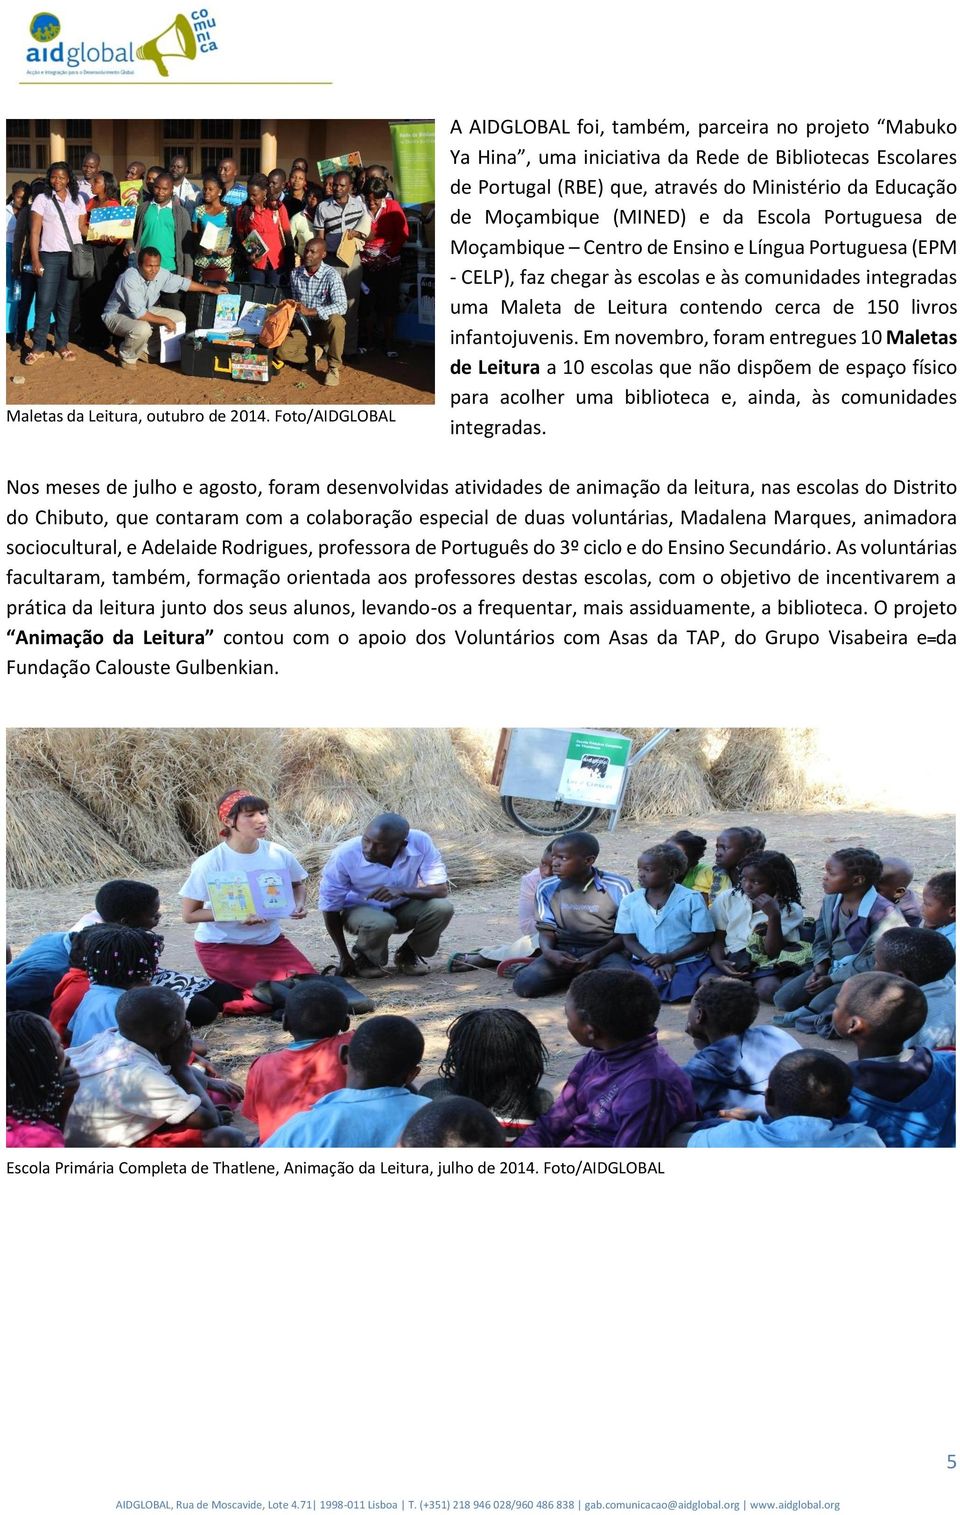 (MINED) e da Escola Portuguesa de Moçambique Centro de Ensino e Língua Portuguesa (EPM - CELP), faz chegar às escolas e às comunidades integradas uma Maleta de Leitura contendo cerca de 150 livros